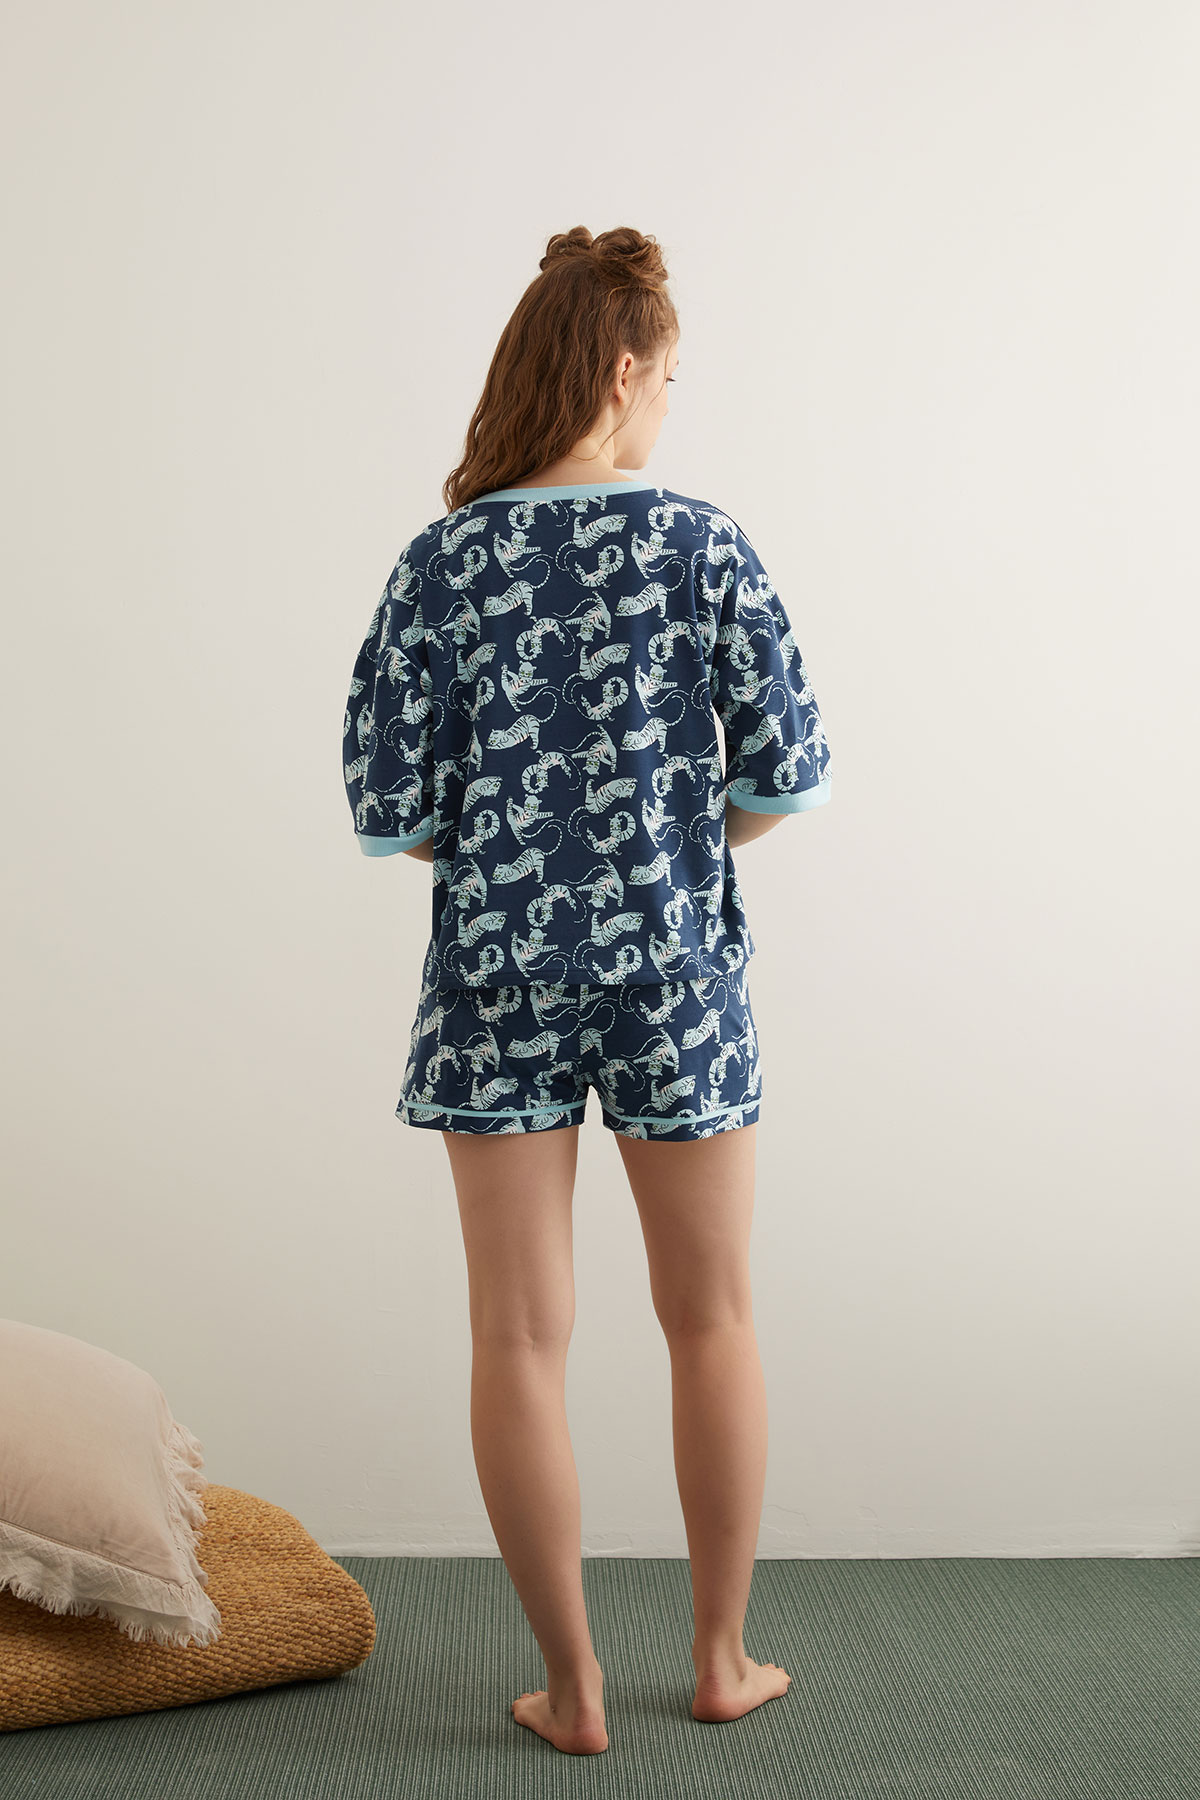 Kadın Pamuklu Kaplan Baskılı Şortlu Pijama Takımı